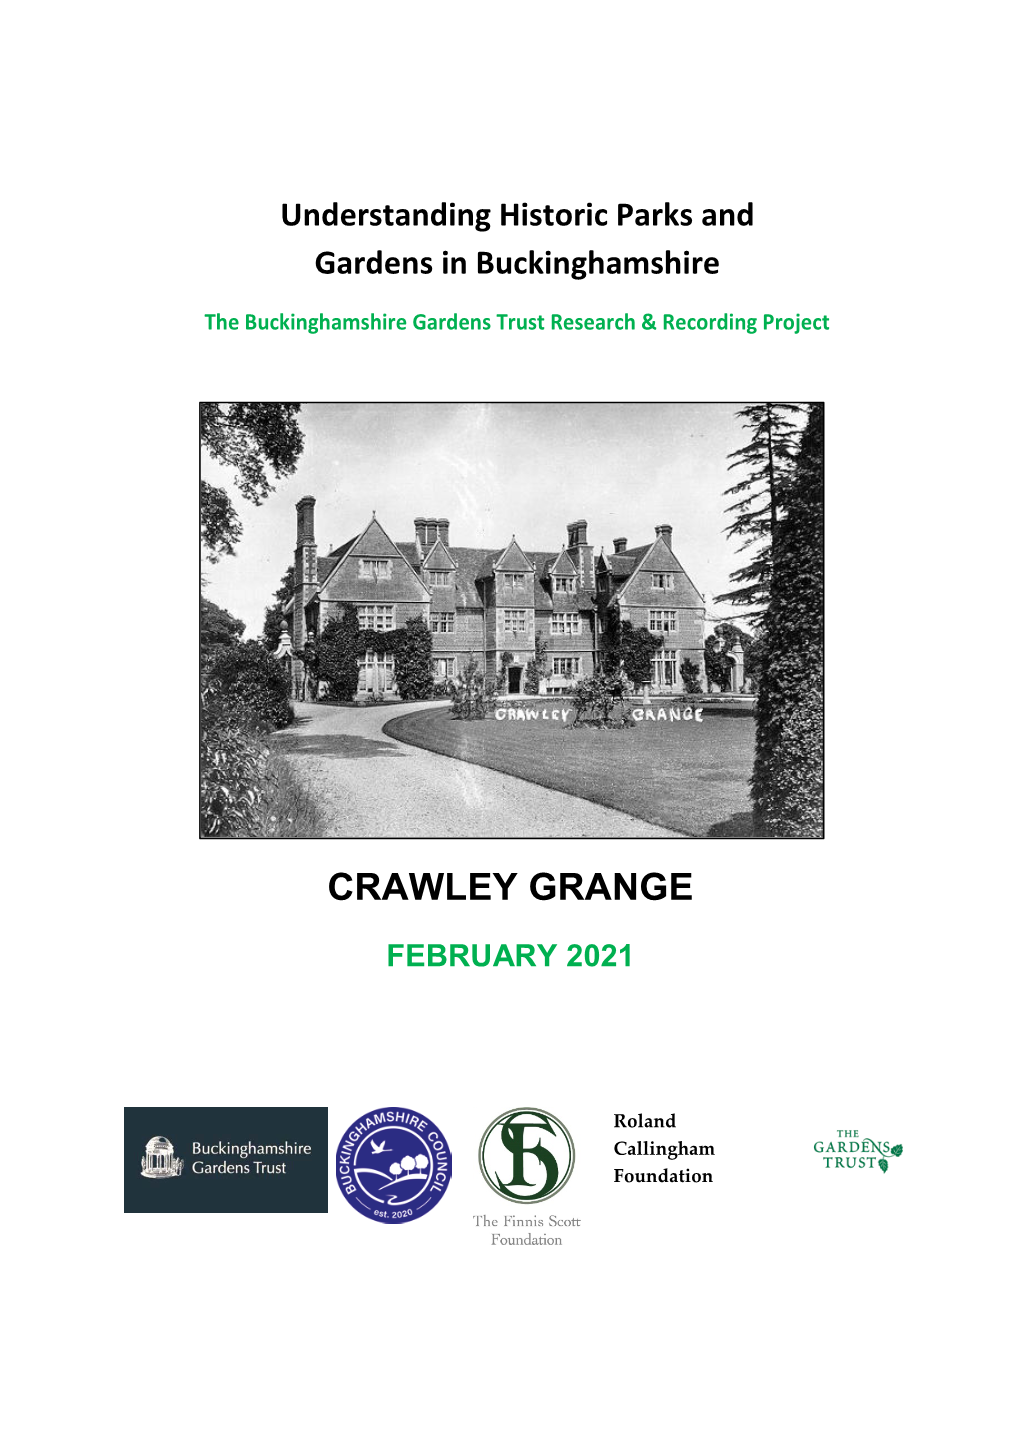 Crawley Grange